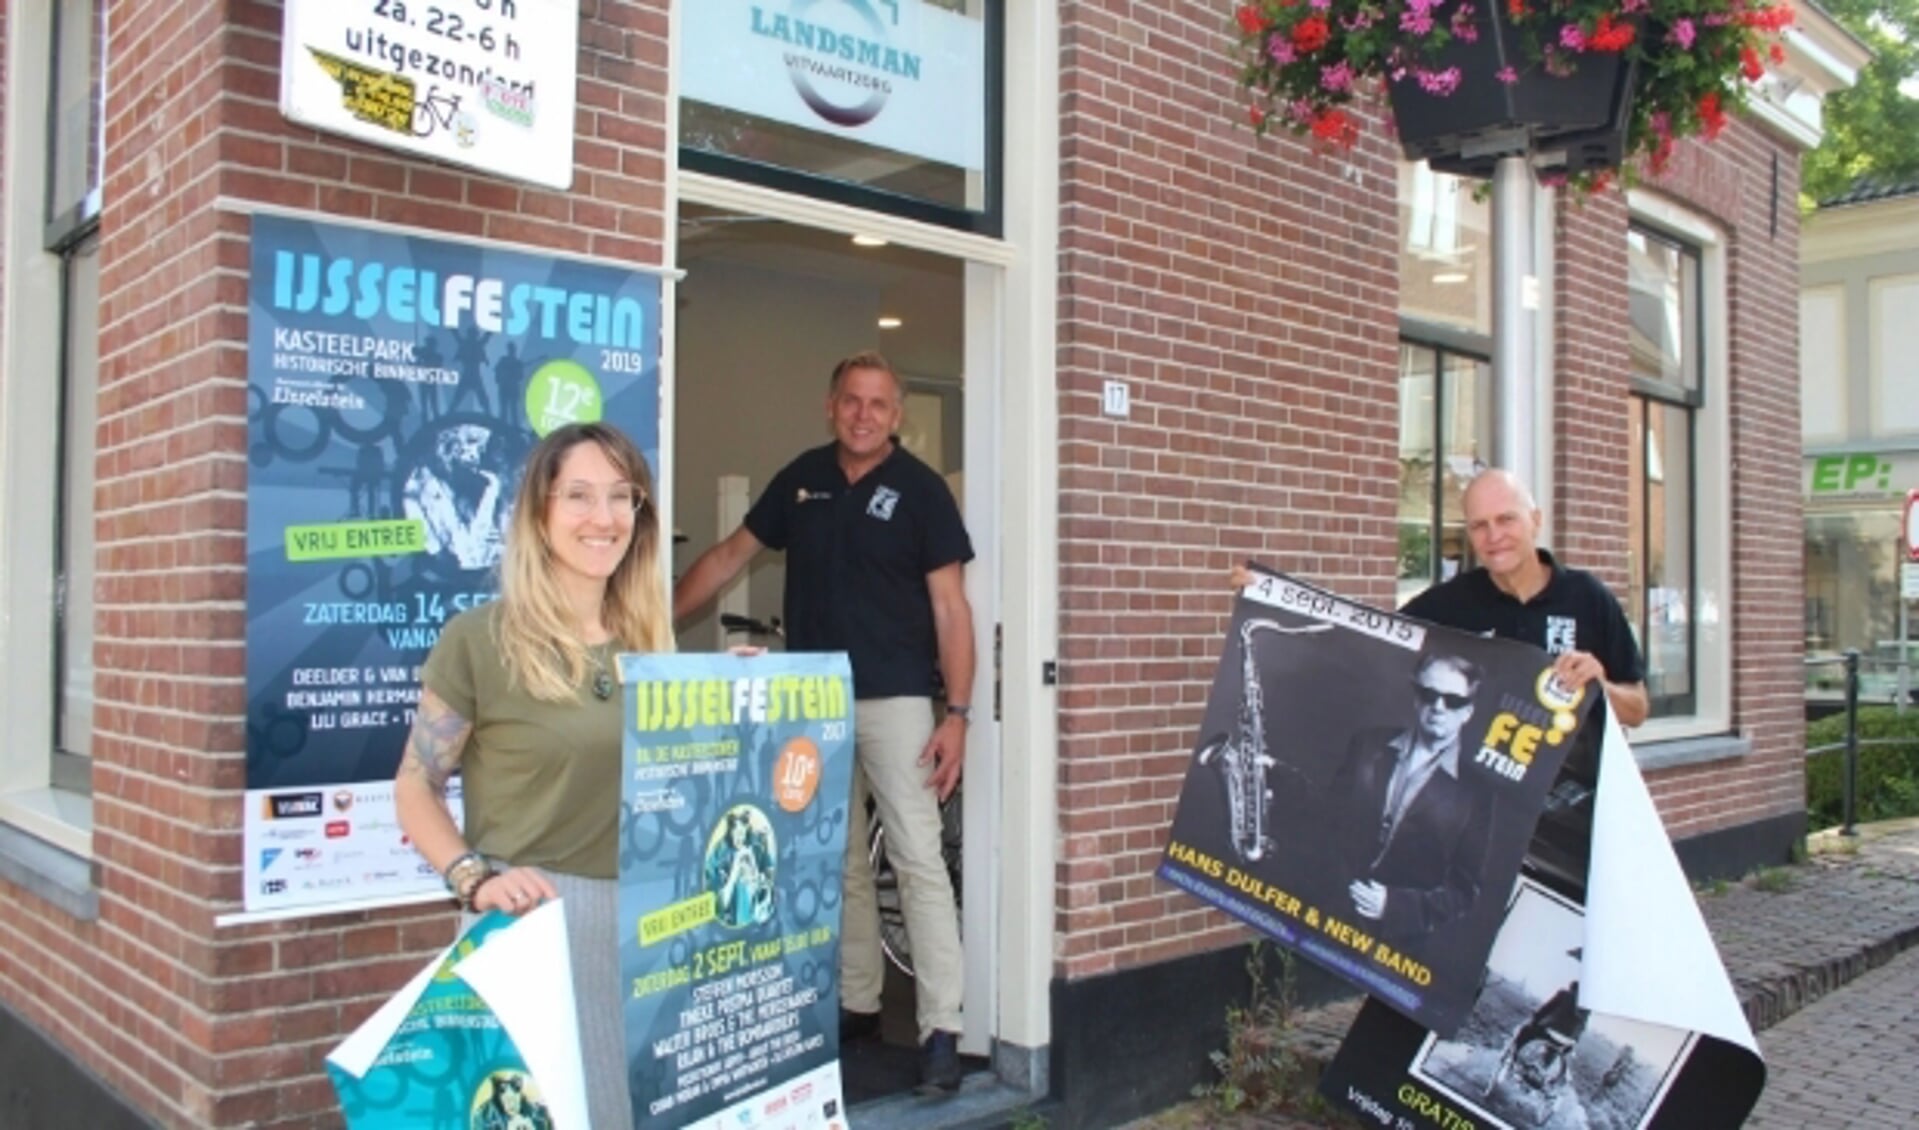 De bestuursleden van het IJsselFEstein waren in de zomervakantie nog druk bezig met de organisatie van het populaire jaarlijkse muziekevenement. (Foto: Lysette Verwegen)